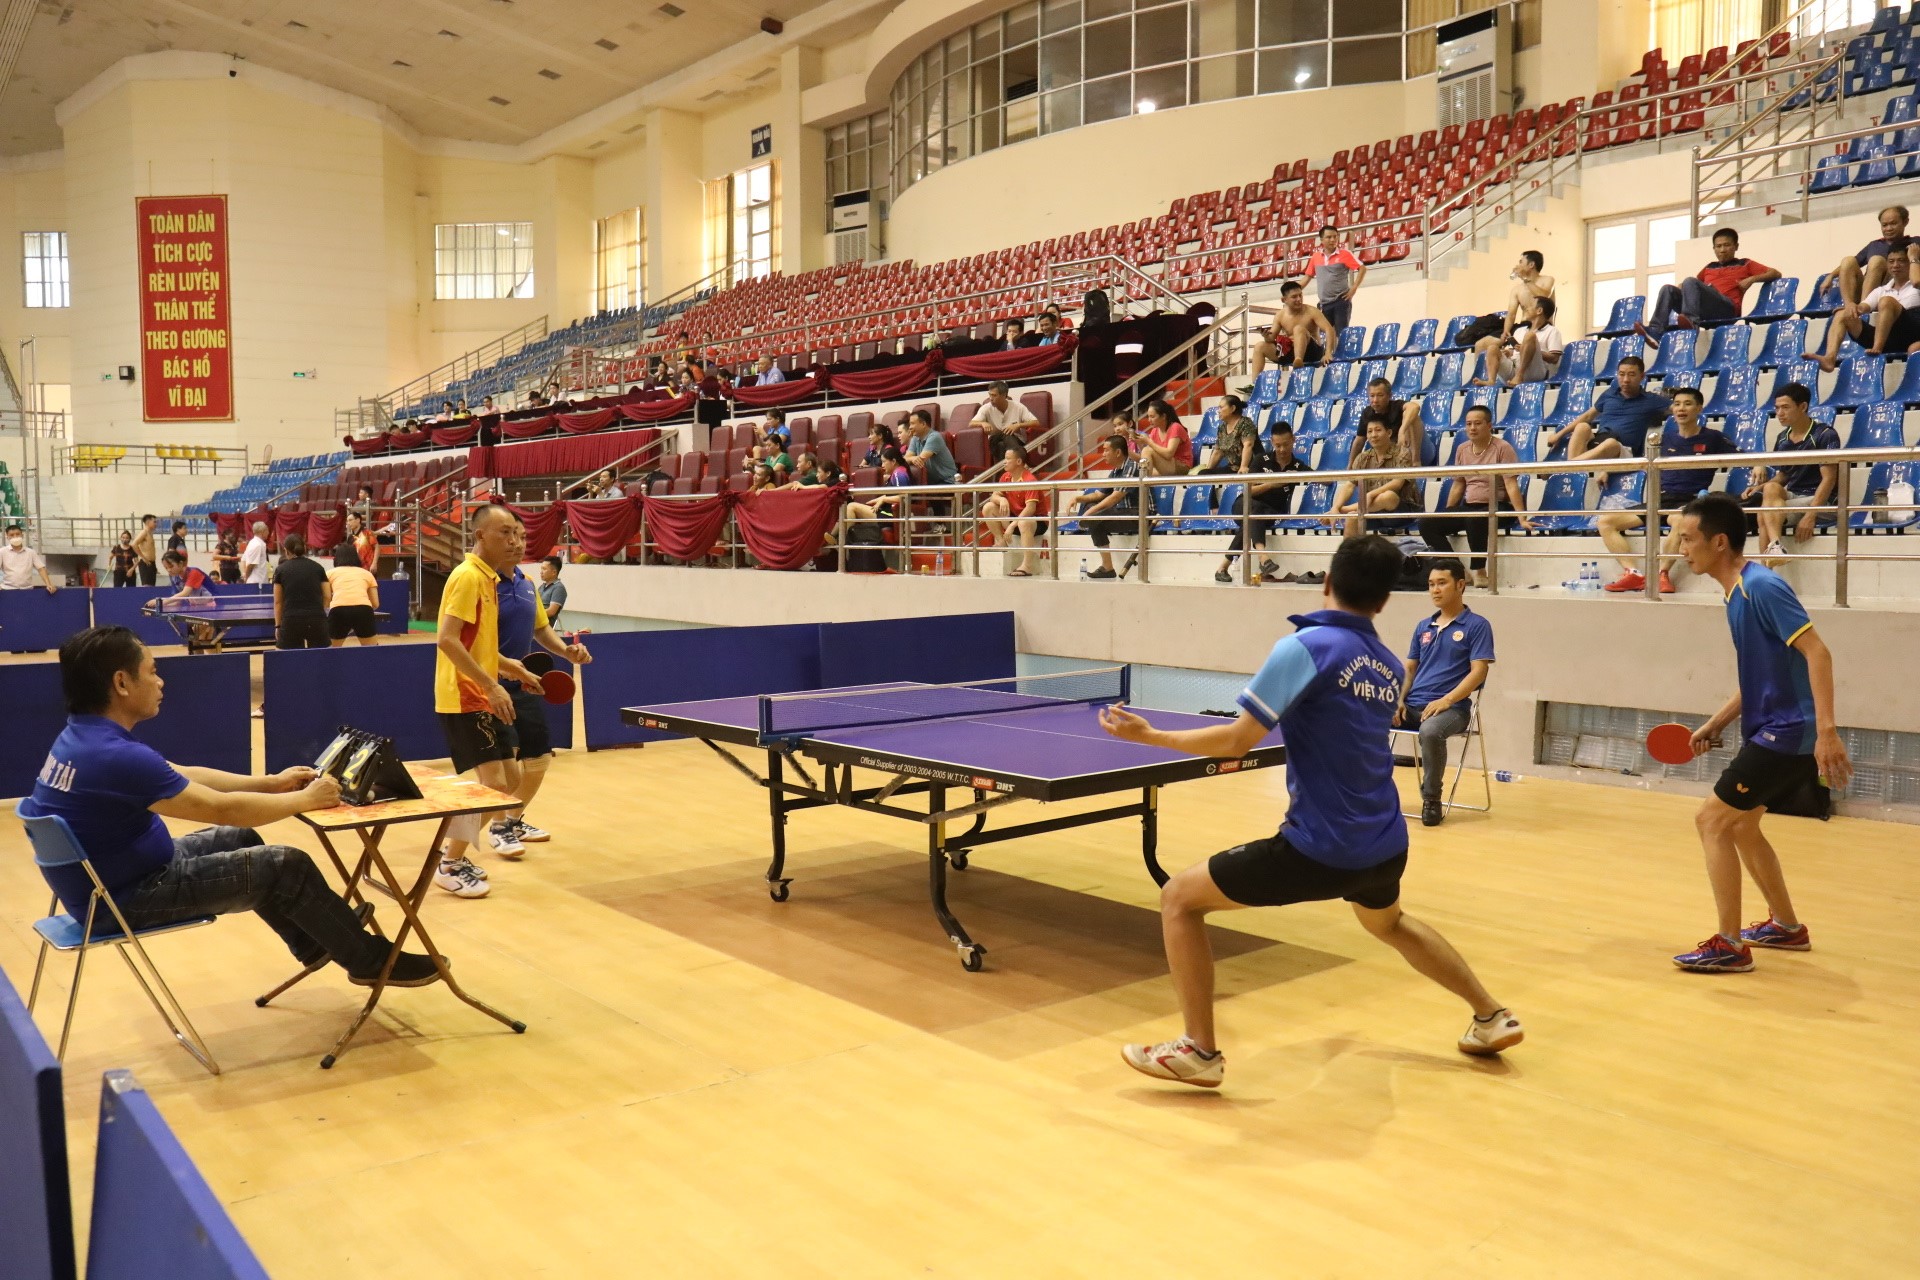 Tổ chức thi đấu các môn Cầu lông, Bóng bàn, Quần vợt, Đá cầu  trong khuôn khổ Đại hội TDTT tỉnh Ninh Bình lần thứ VII năm 2022